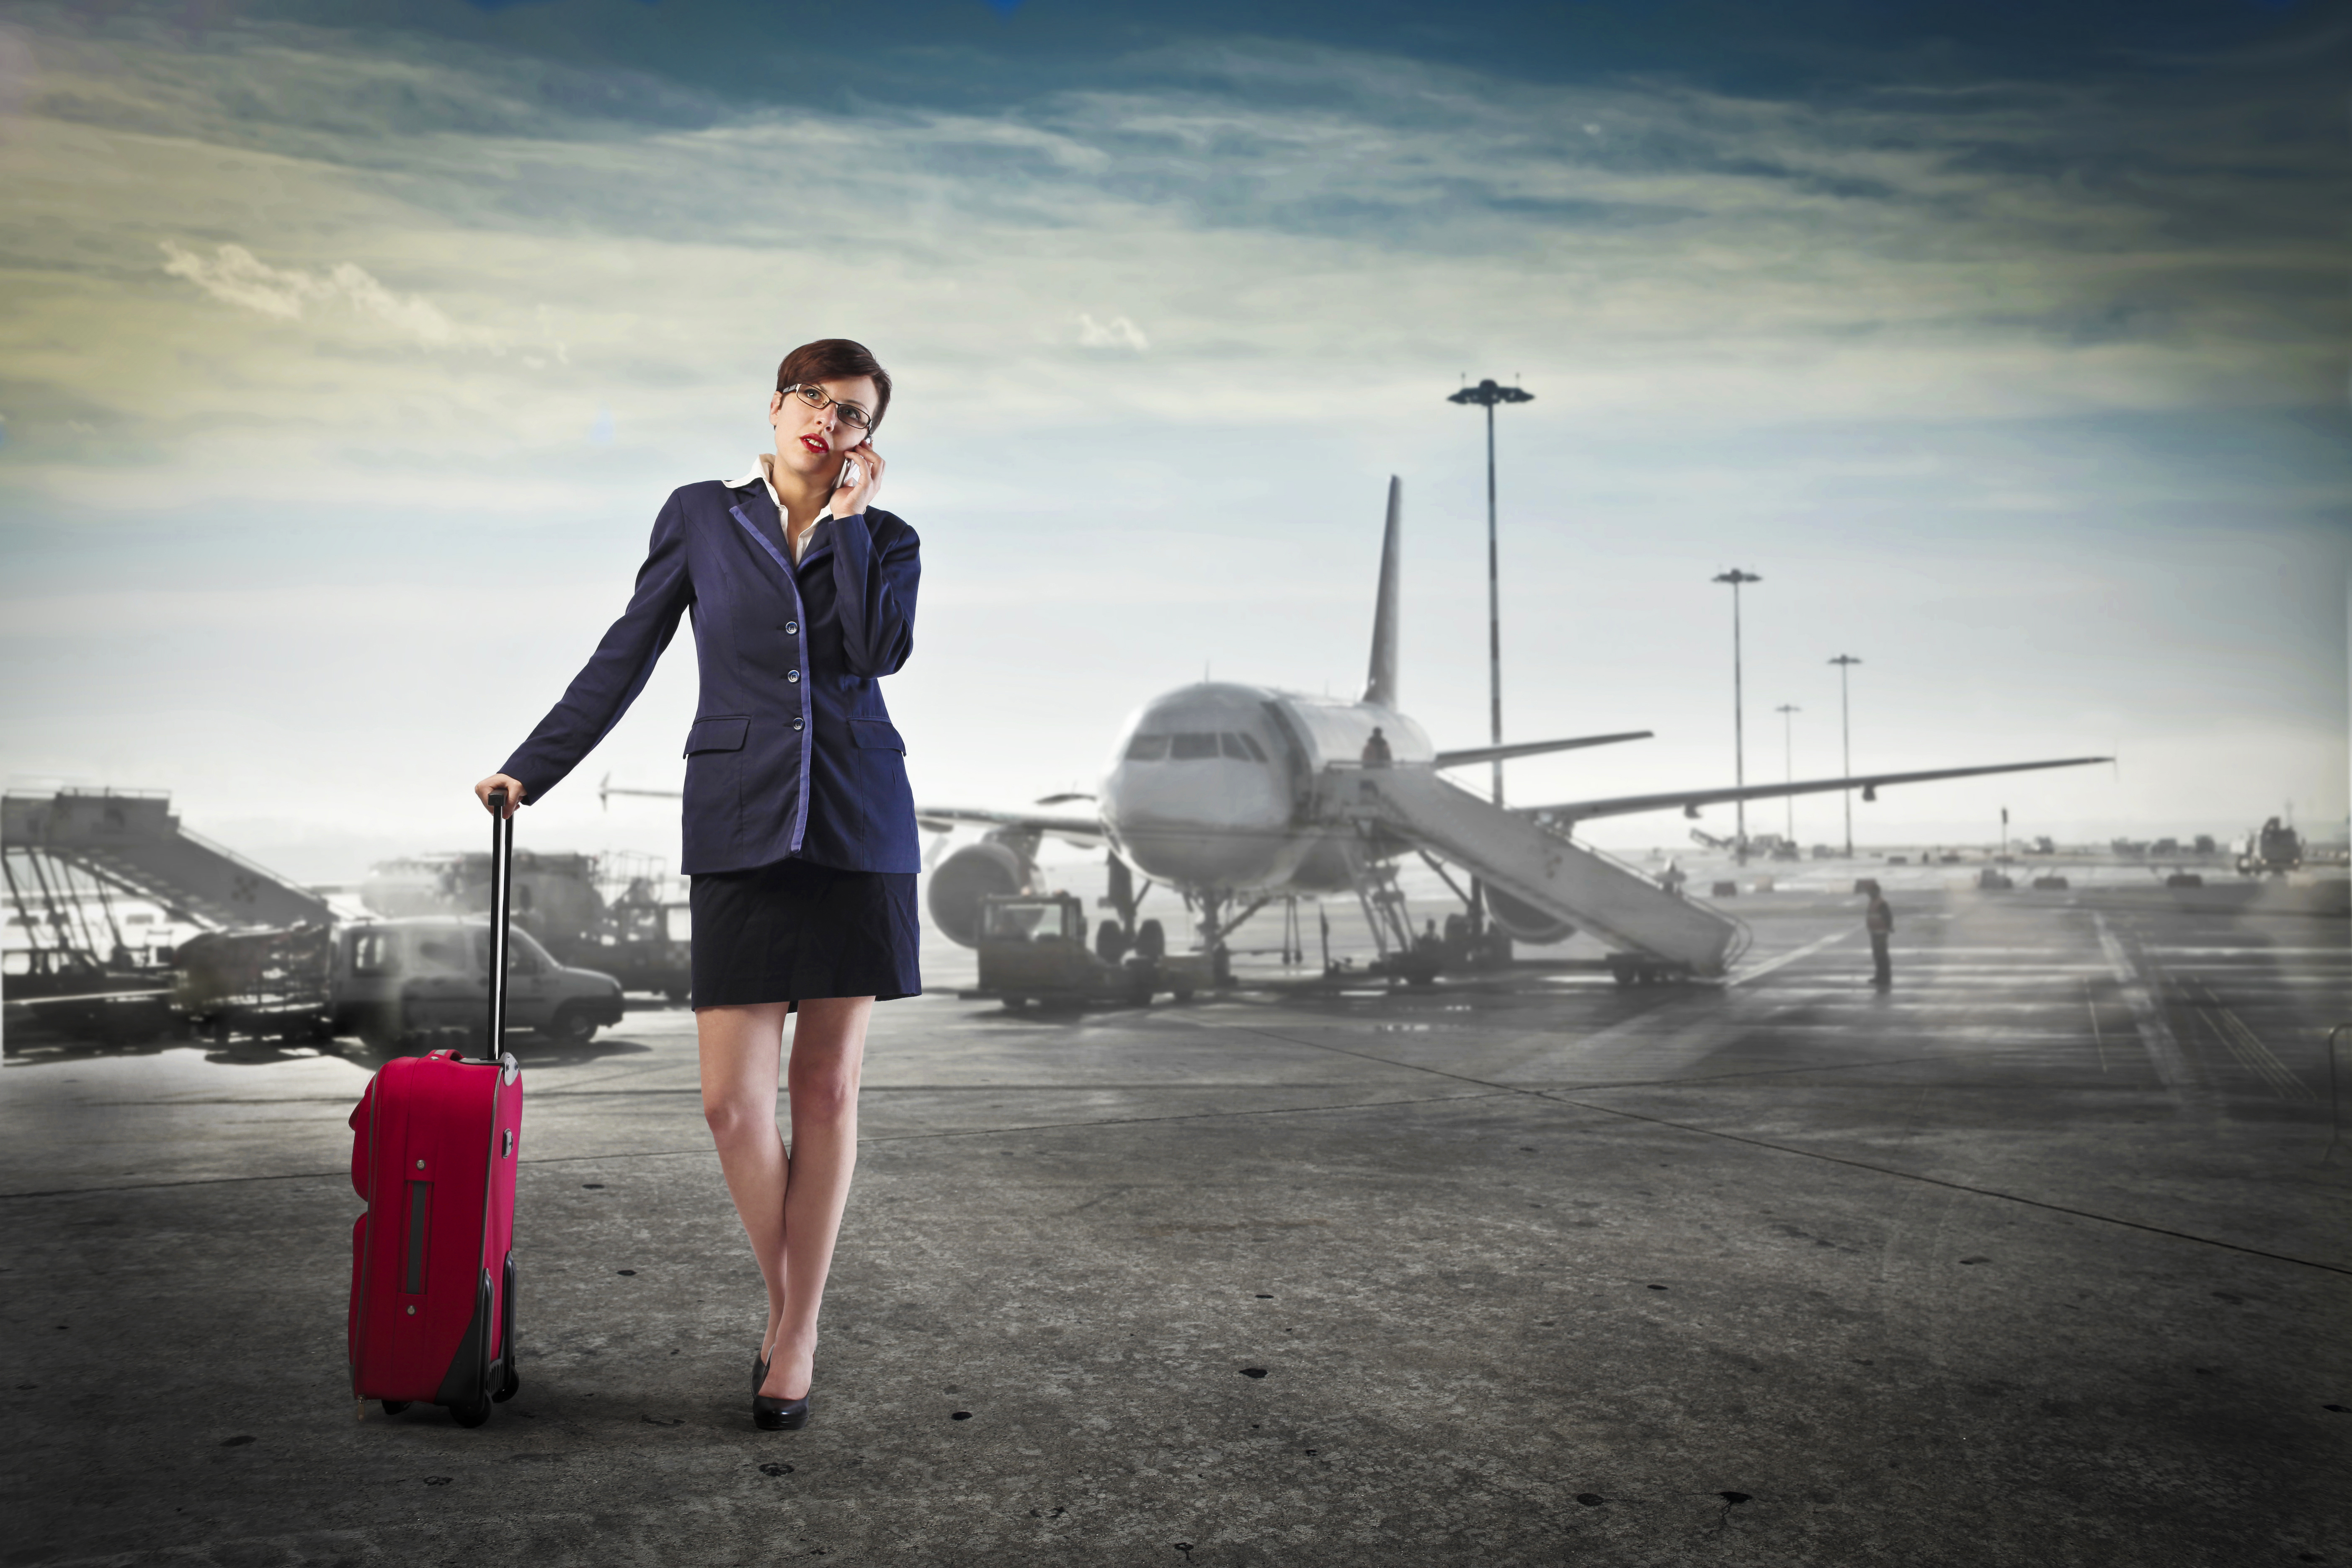 Самолет прощание. Девушка на фоне самолета. Девушка с чемоданом в аэропорту. Девушка на фоне аэропорта. Человек на фоне самолета.